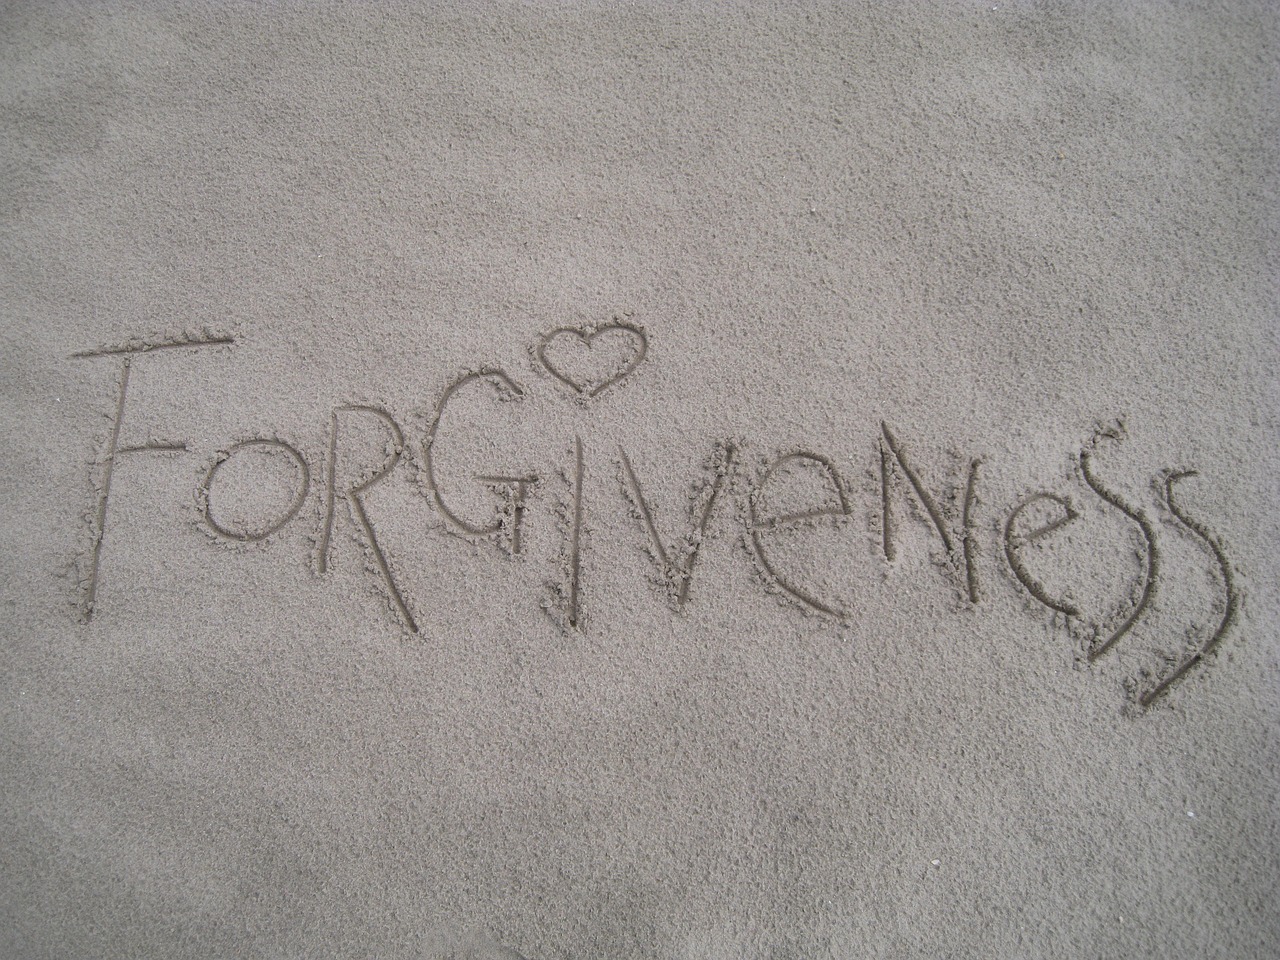 Am I Really Forgiven?